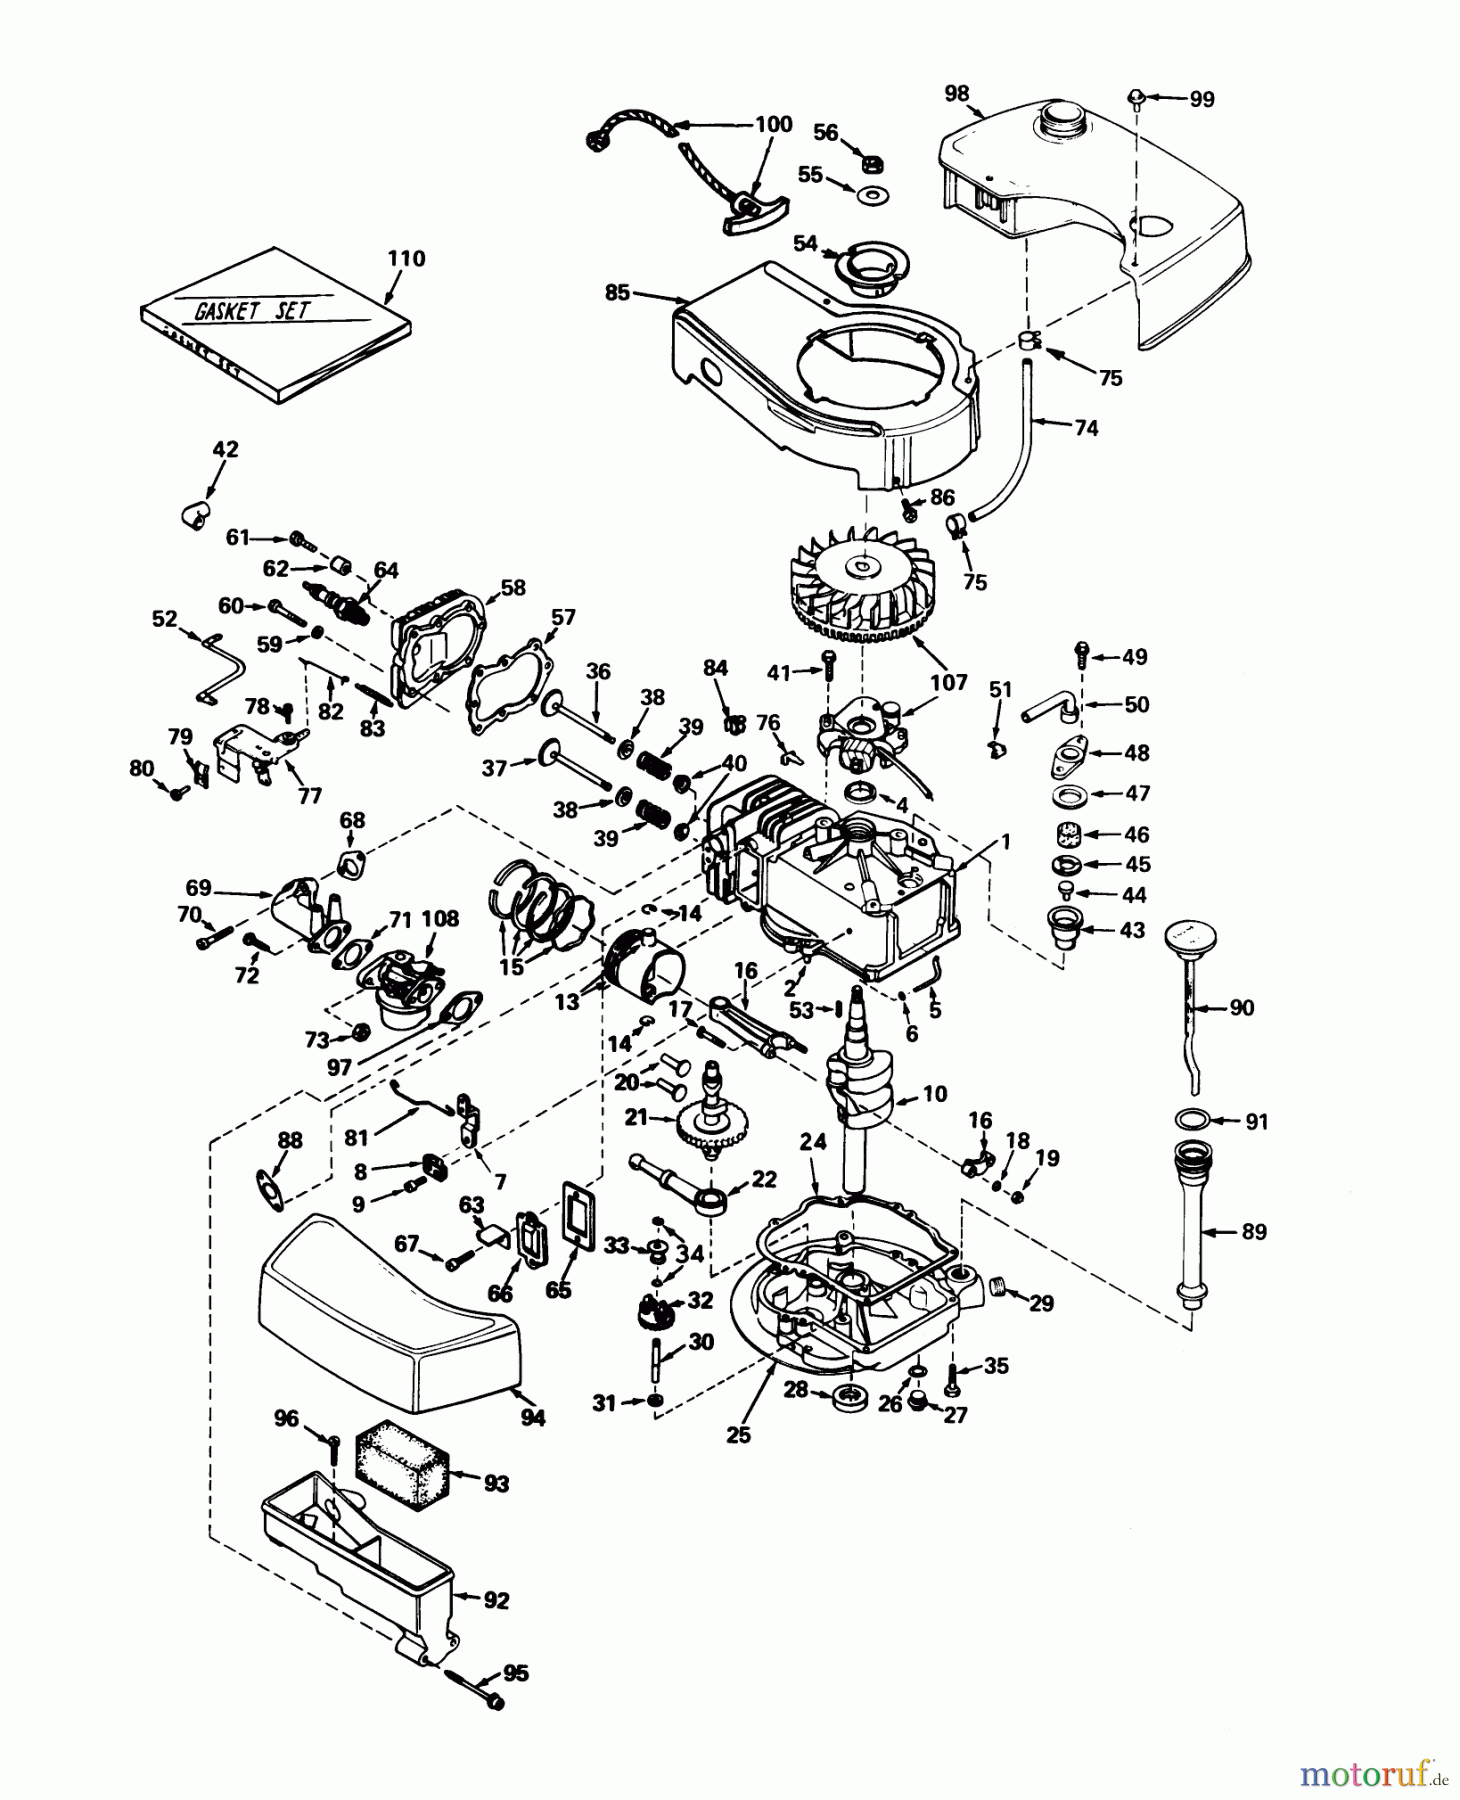  Toro Neu Mowers, Walk-Behind Seite 1 20673 - Toro Lawnmower, 1976 (6000001-6999999) ENGINE TECUMSEH MODEL NO. TNT 100-10046